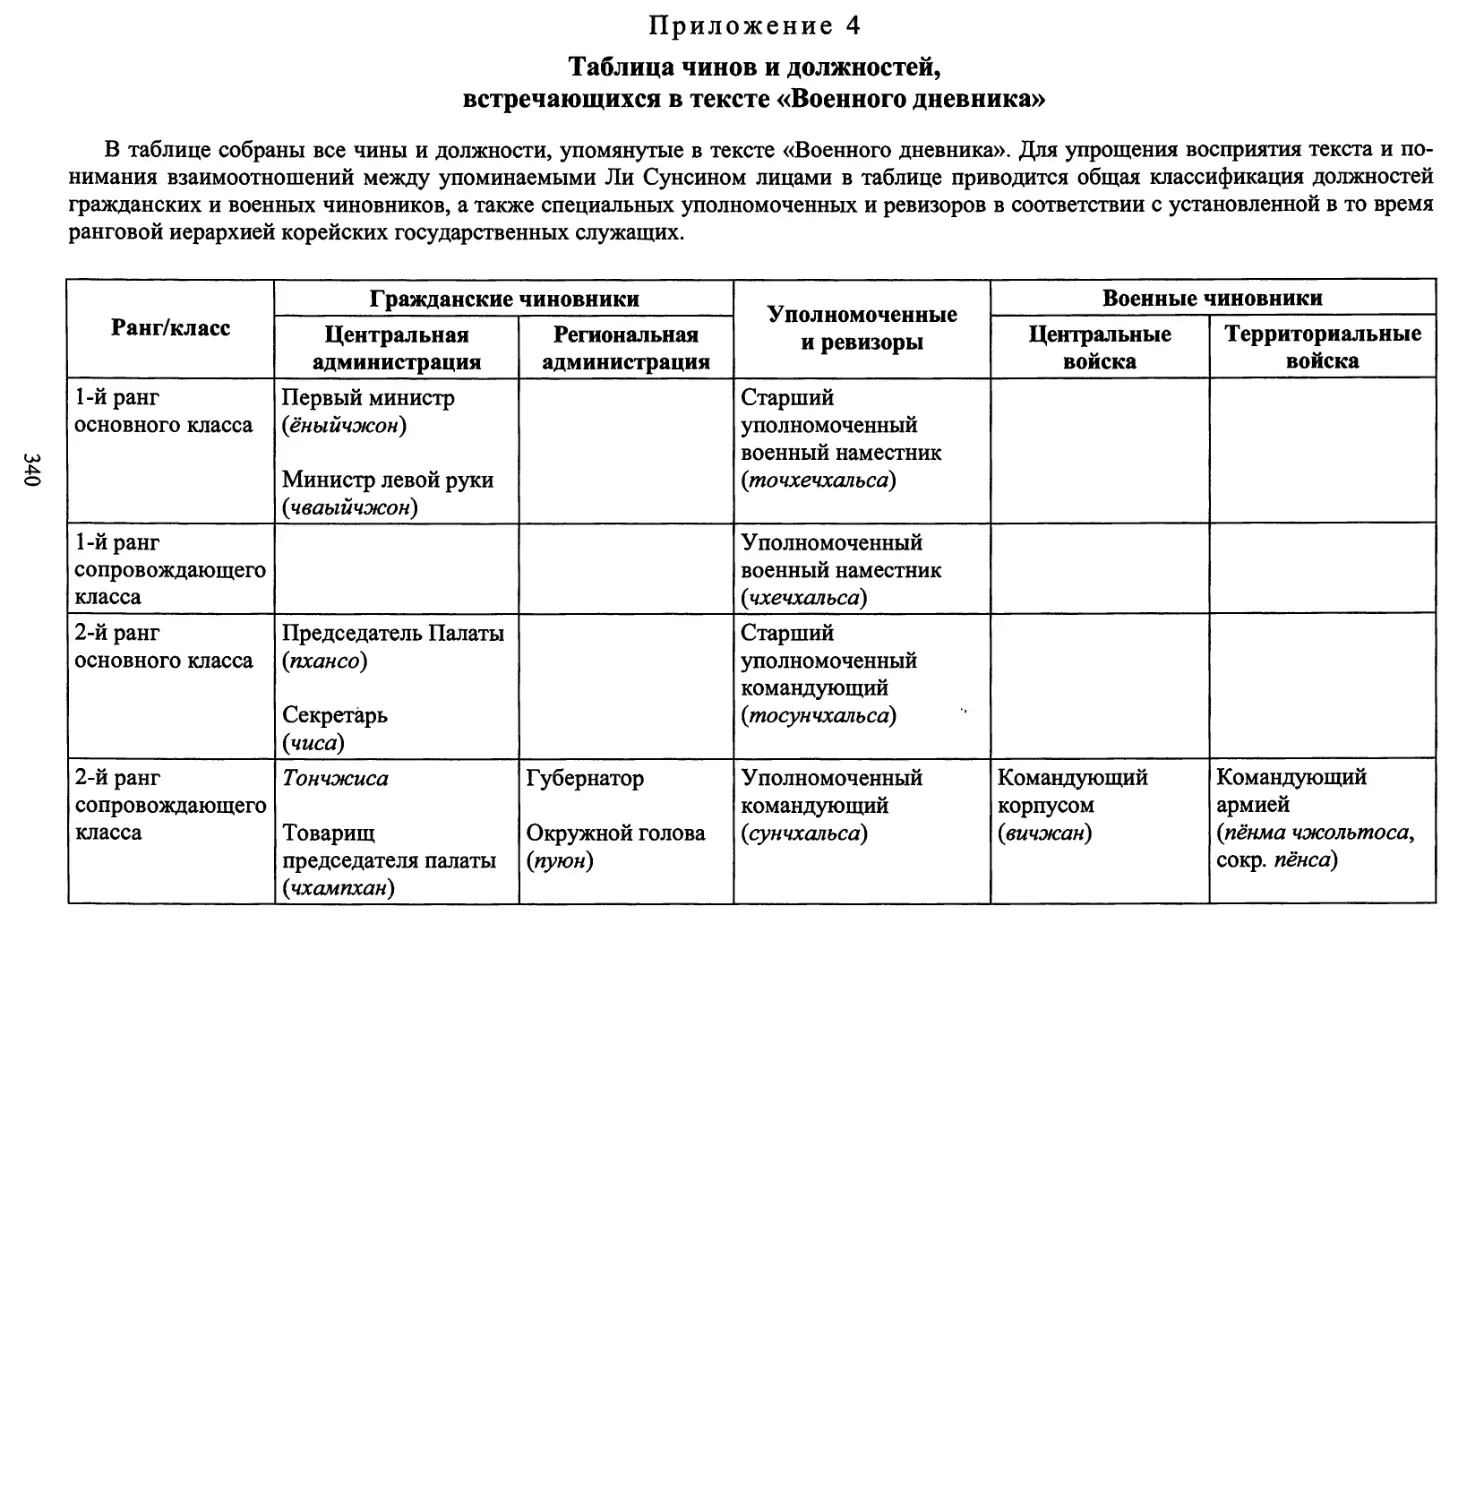 Приложение 4. Таблица чинов и должностей, встречающихся в тексте «Военного дневника»